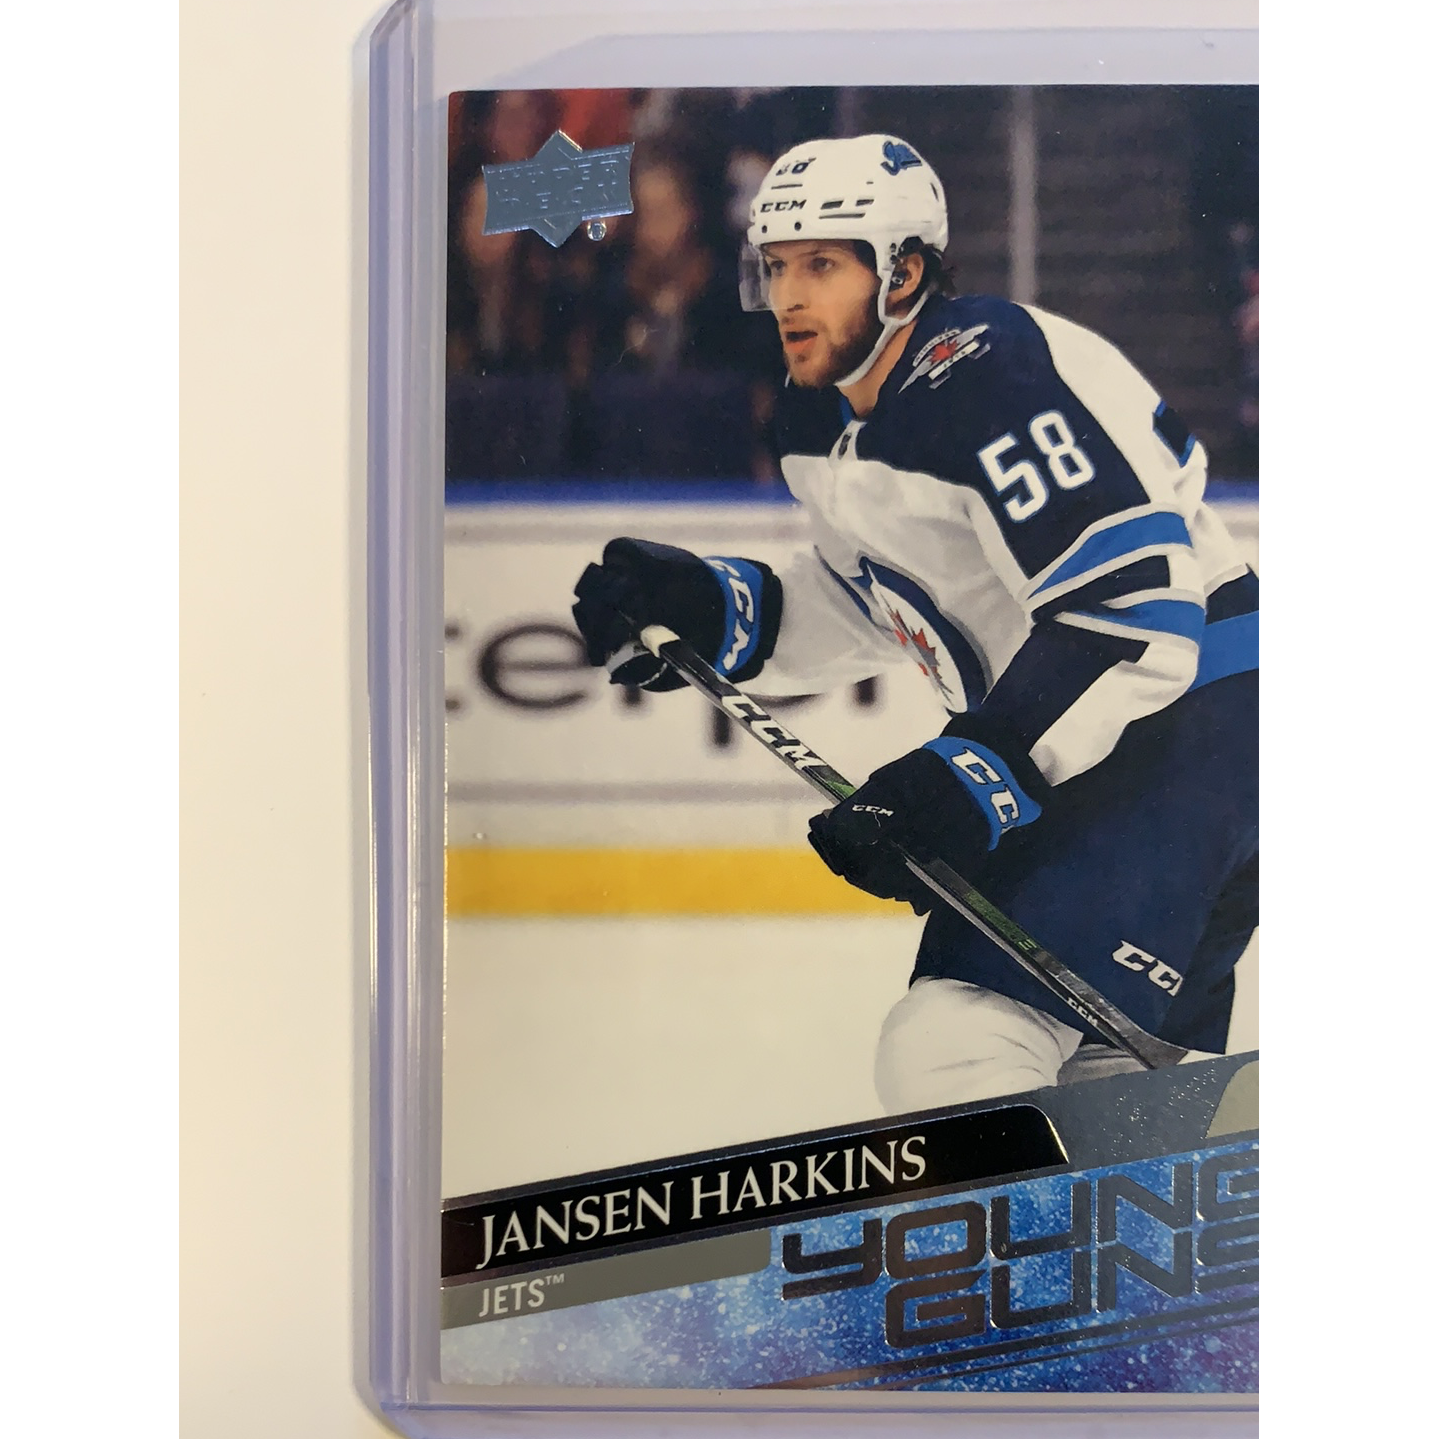  2020-21 Upper Deck Series 1 Jansen Harkins Young Guns  Local Legends Cards & Collectibles